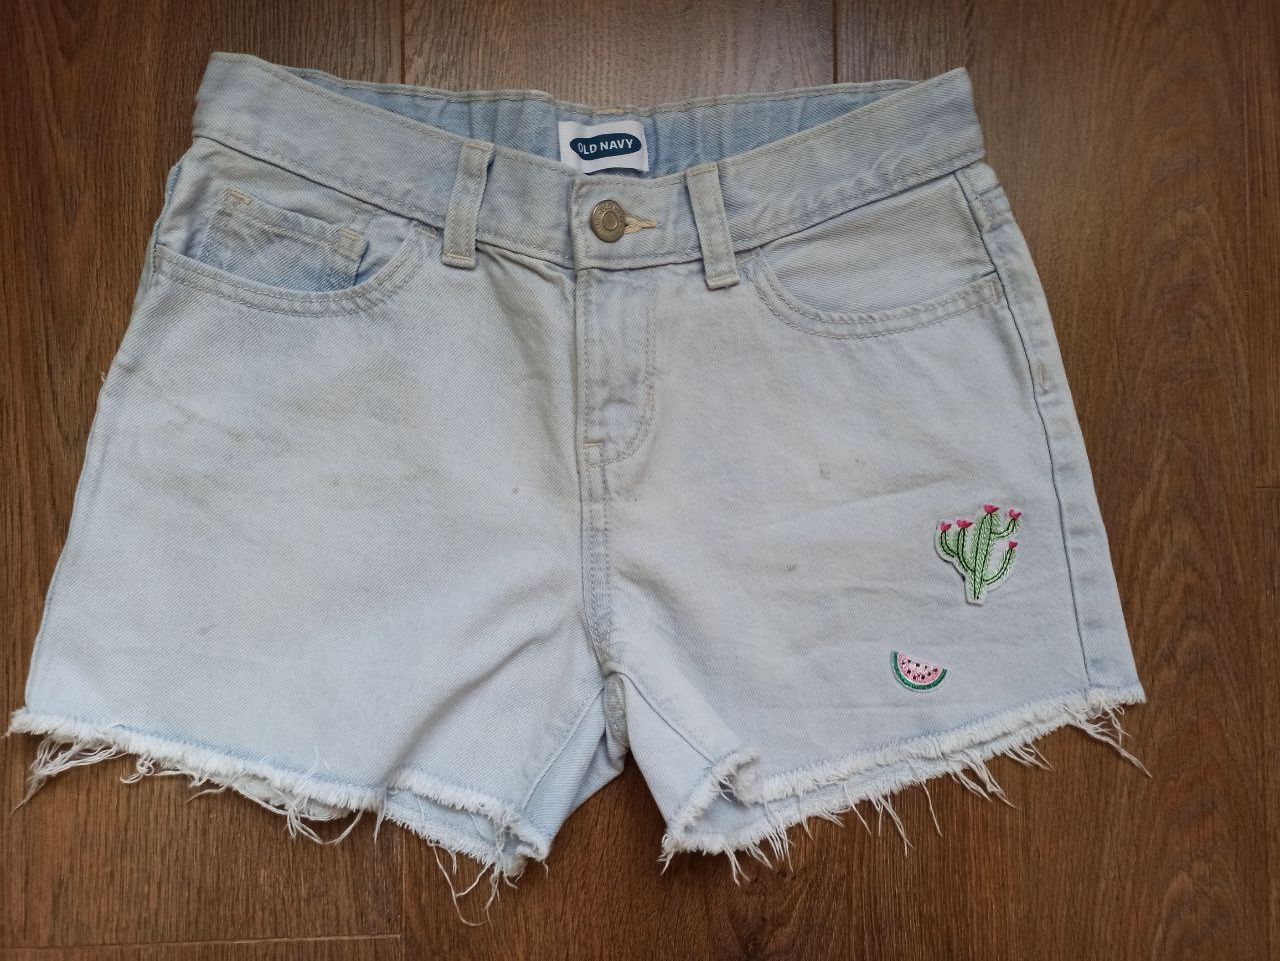 Продам джинсовы шорты на девочку фирмы OLD NAVY 10-12  лет.